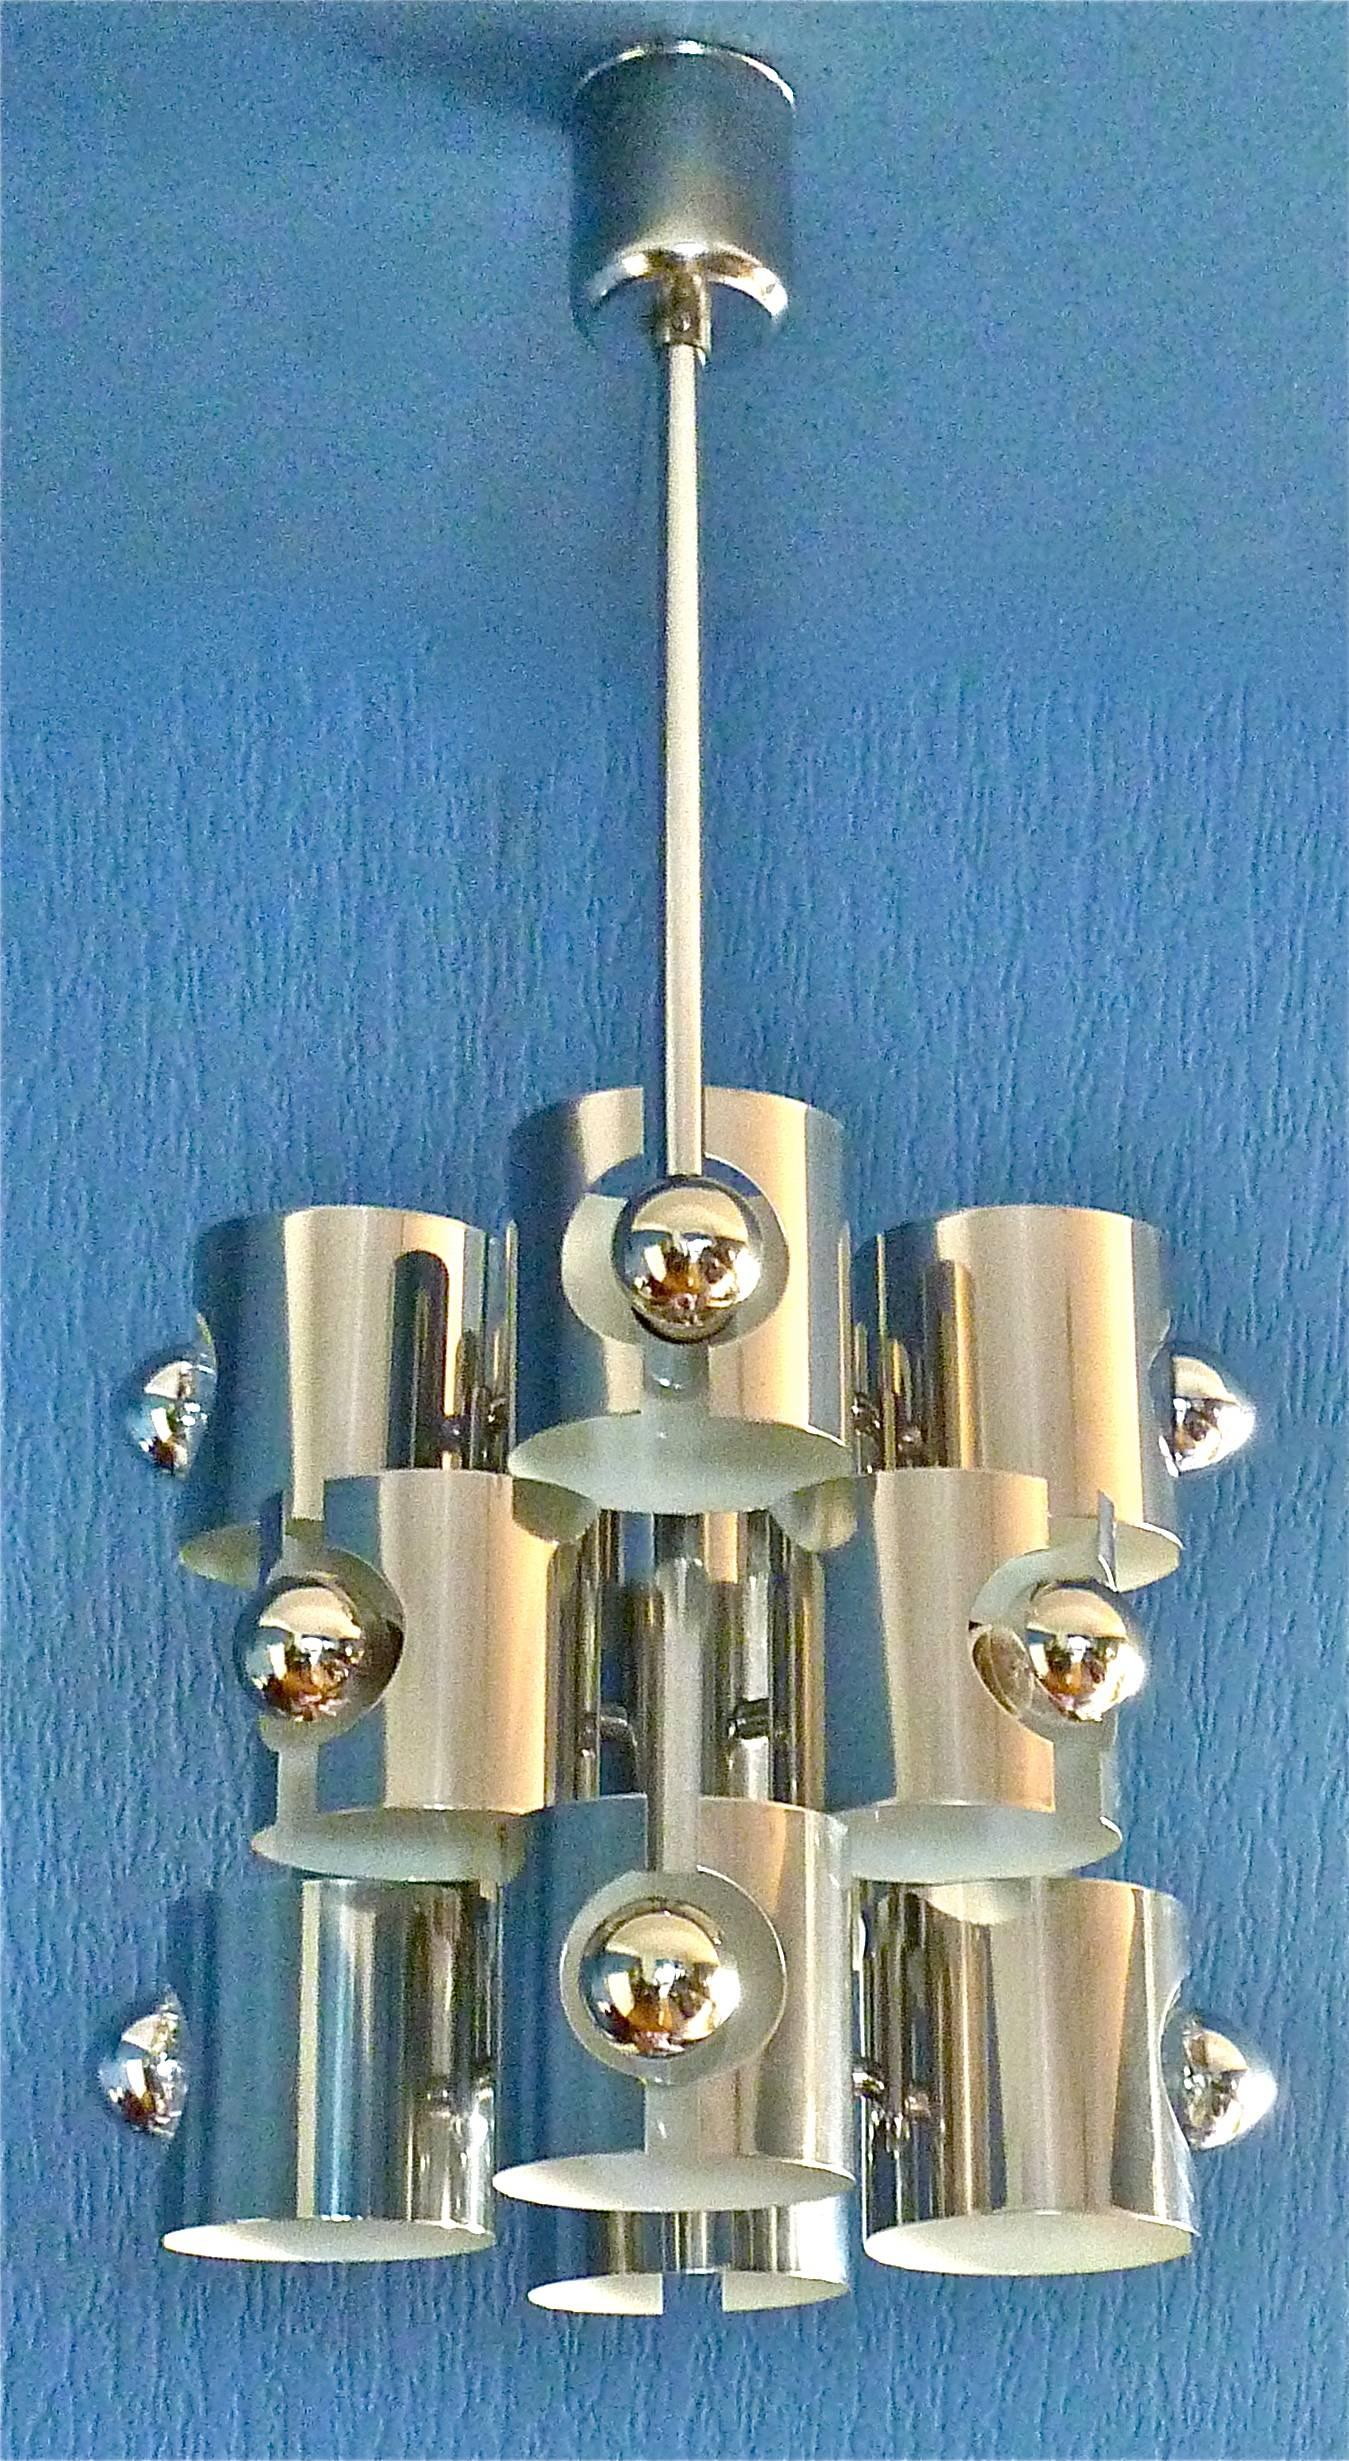 Superbe lustre Space Age Op Art Pop Art conçu par Gaetano Sciolari et exécuté par Sciolari, Italie, vers 1960-70. Le plafonnier et la structure sont en laiton chromé et en métal émaillé laqué blanc. Ce magnifique lustre a une largeur de 36 cm /